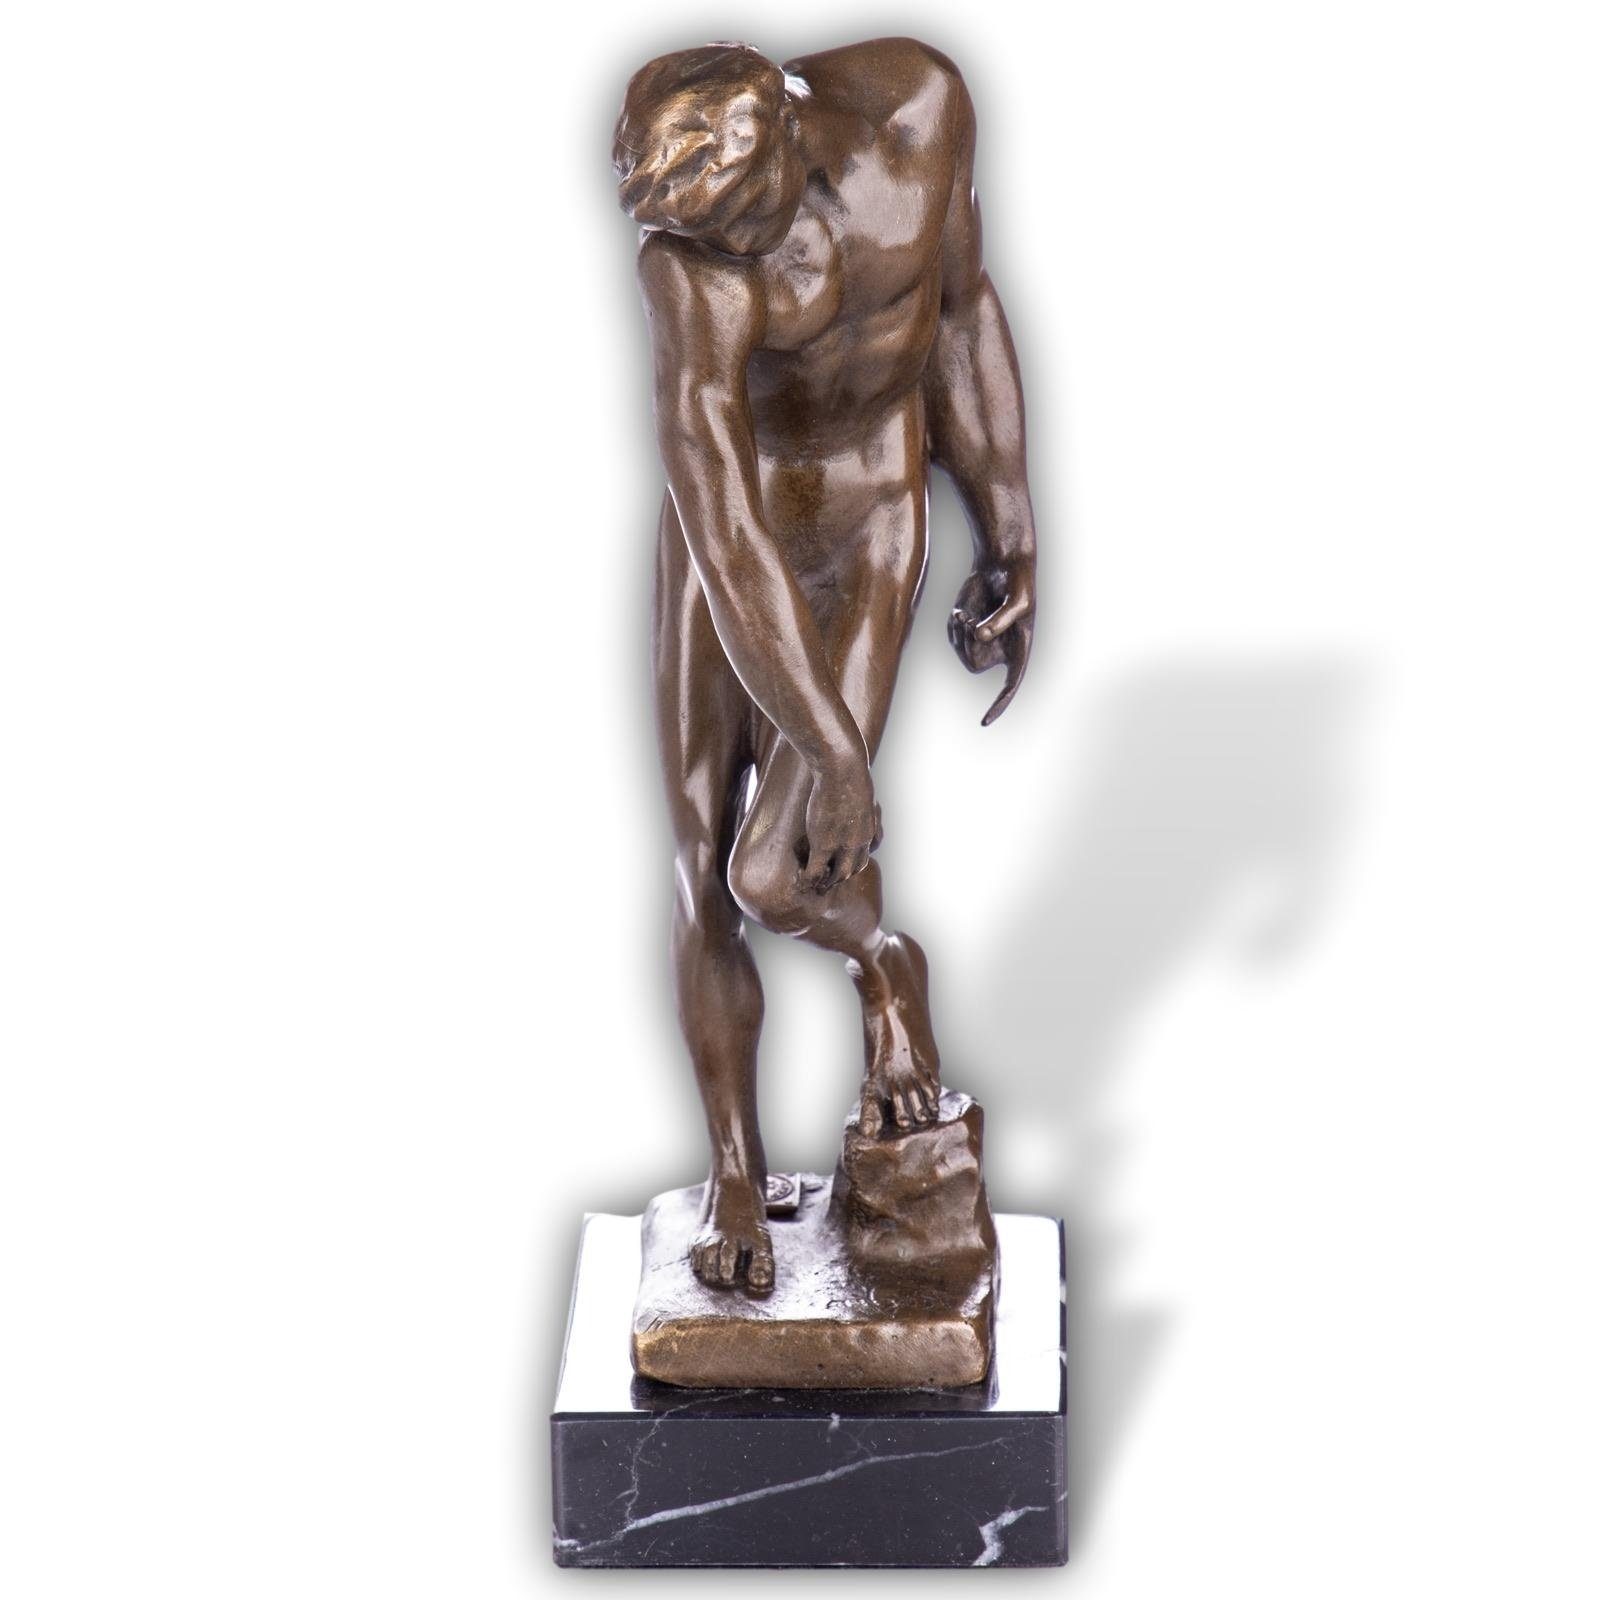 Kopie Adam Rodin Skulptur 20cm Replik nach Akt Skulptur Figur Bronze Aubaho Antik-Stil